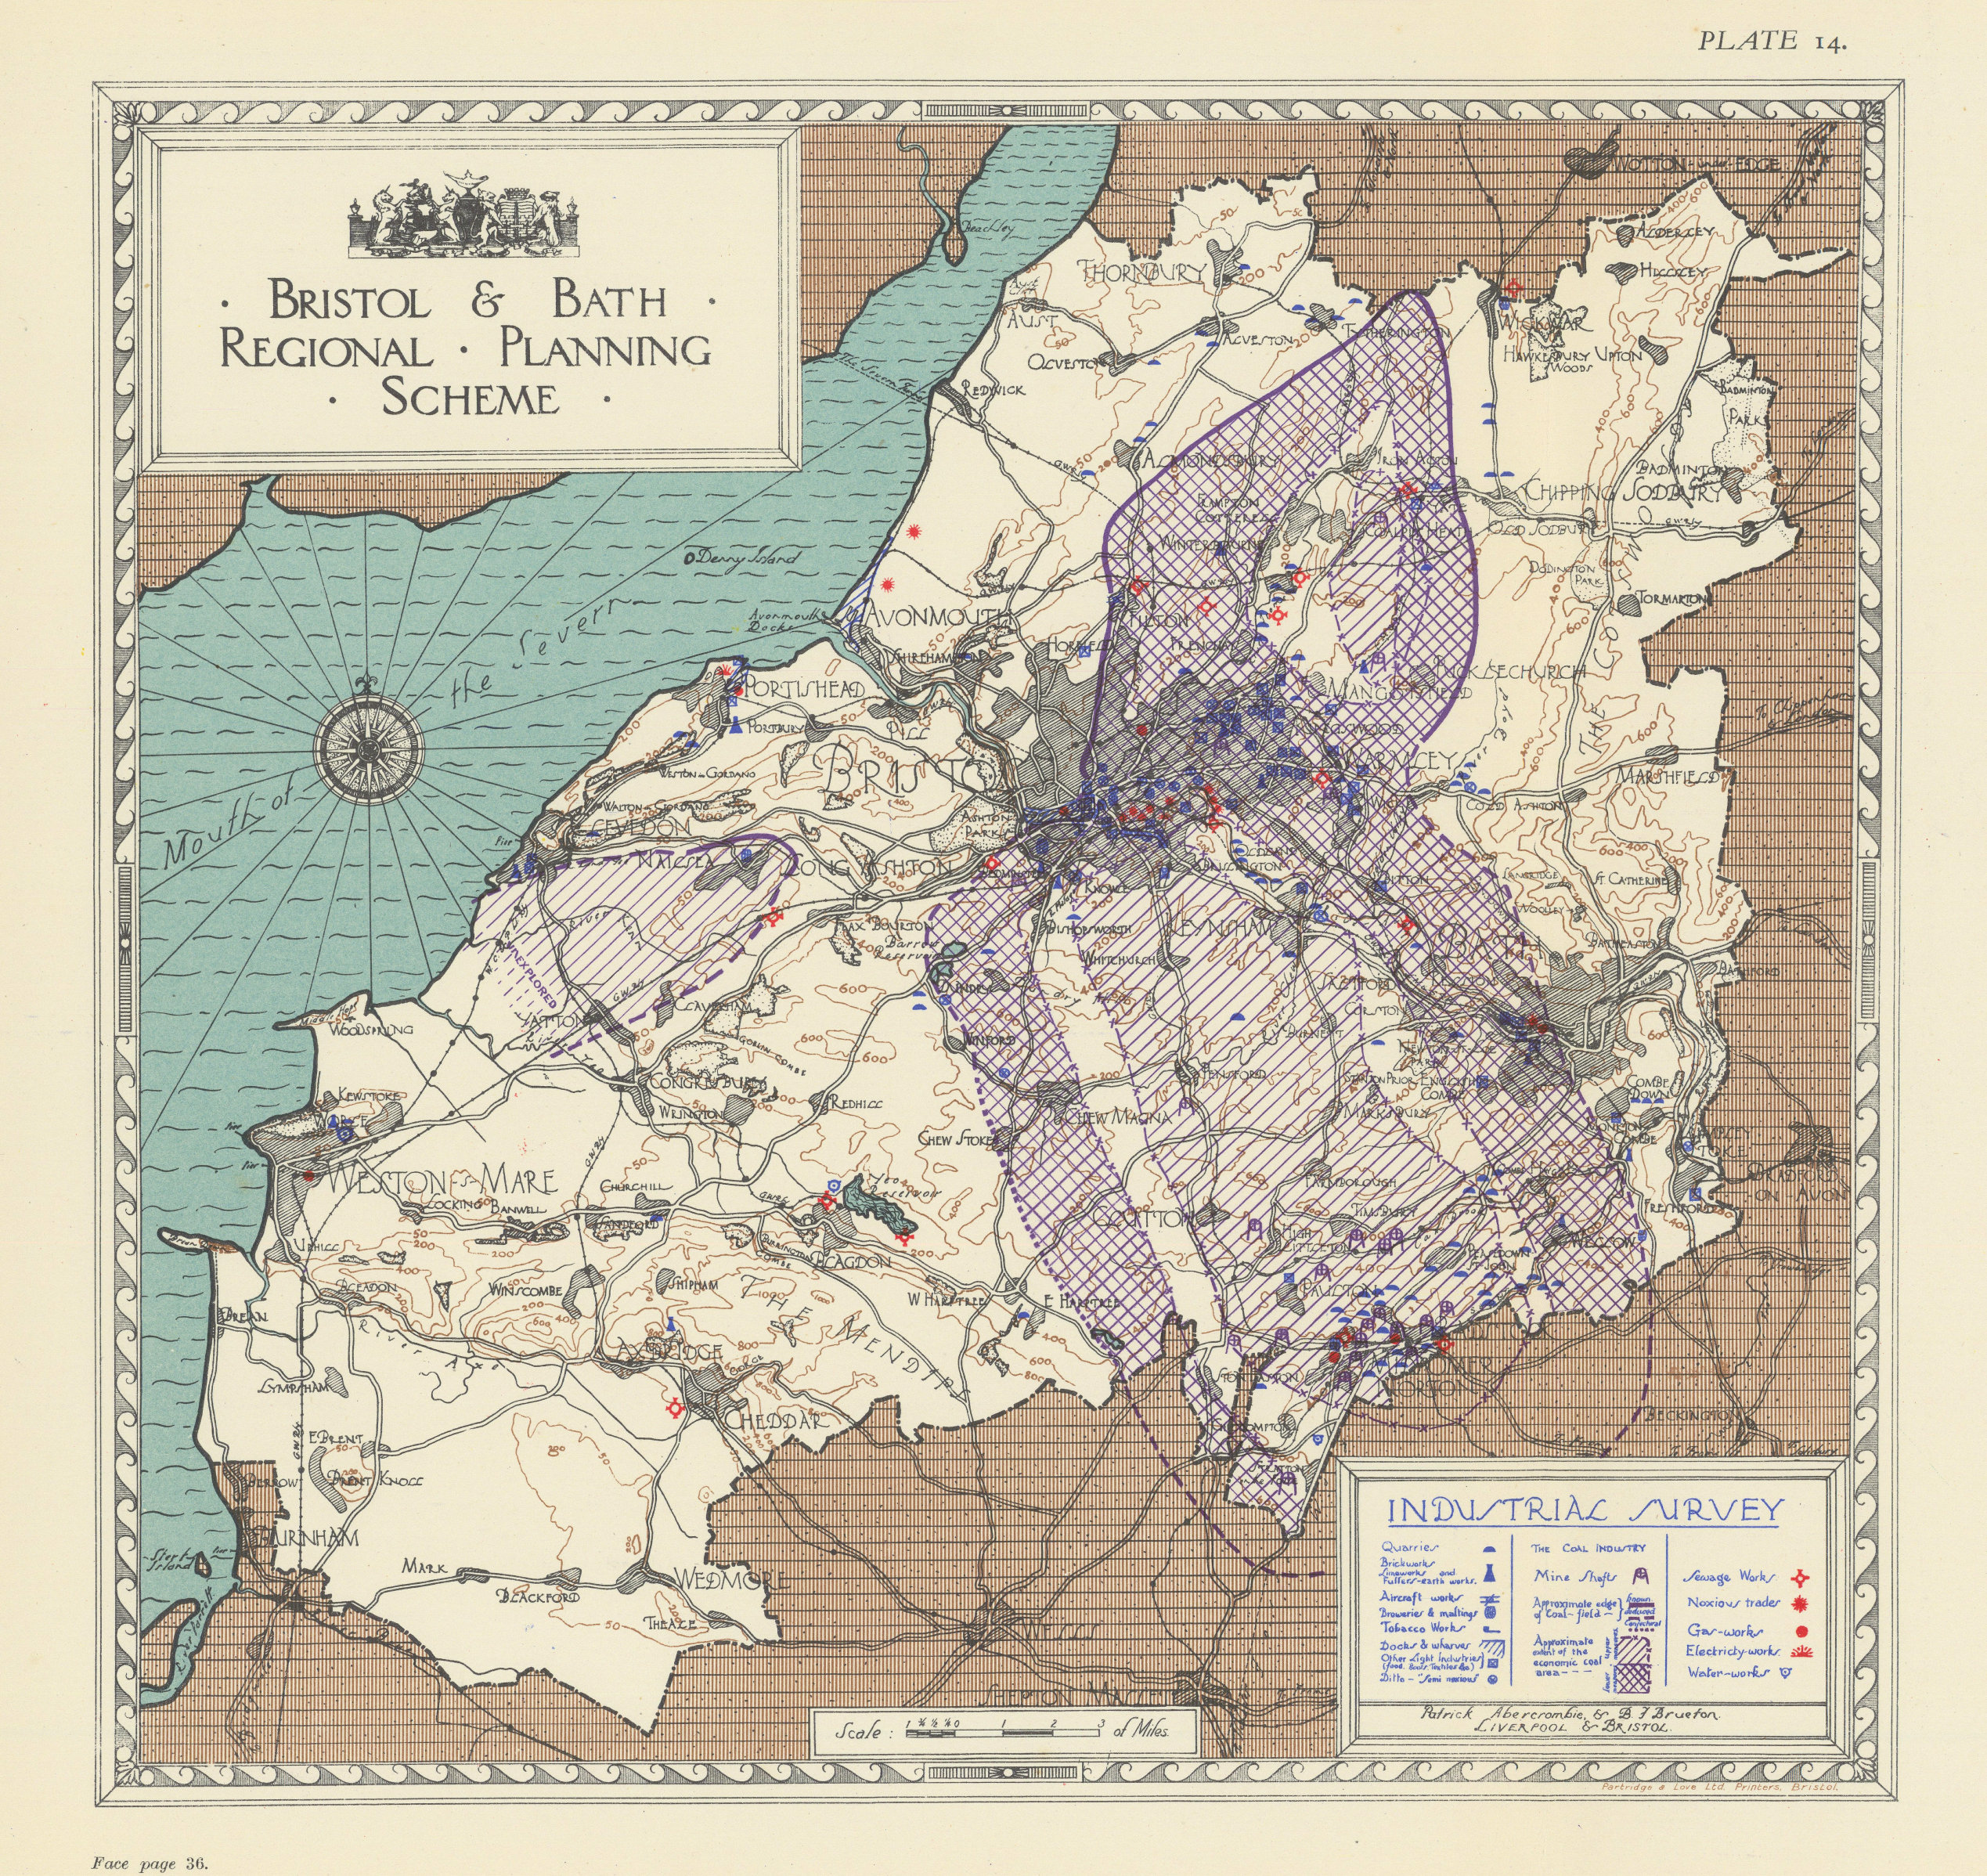 Industrial Survey. Bristol & Bath Regional Planning Scheme. ABERCROMBIE 1930 map